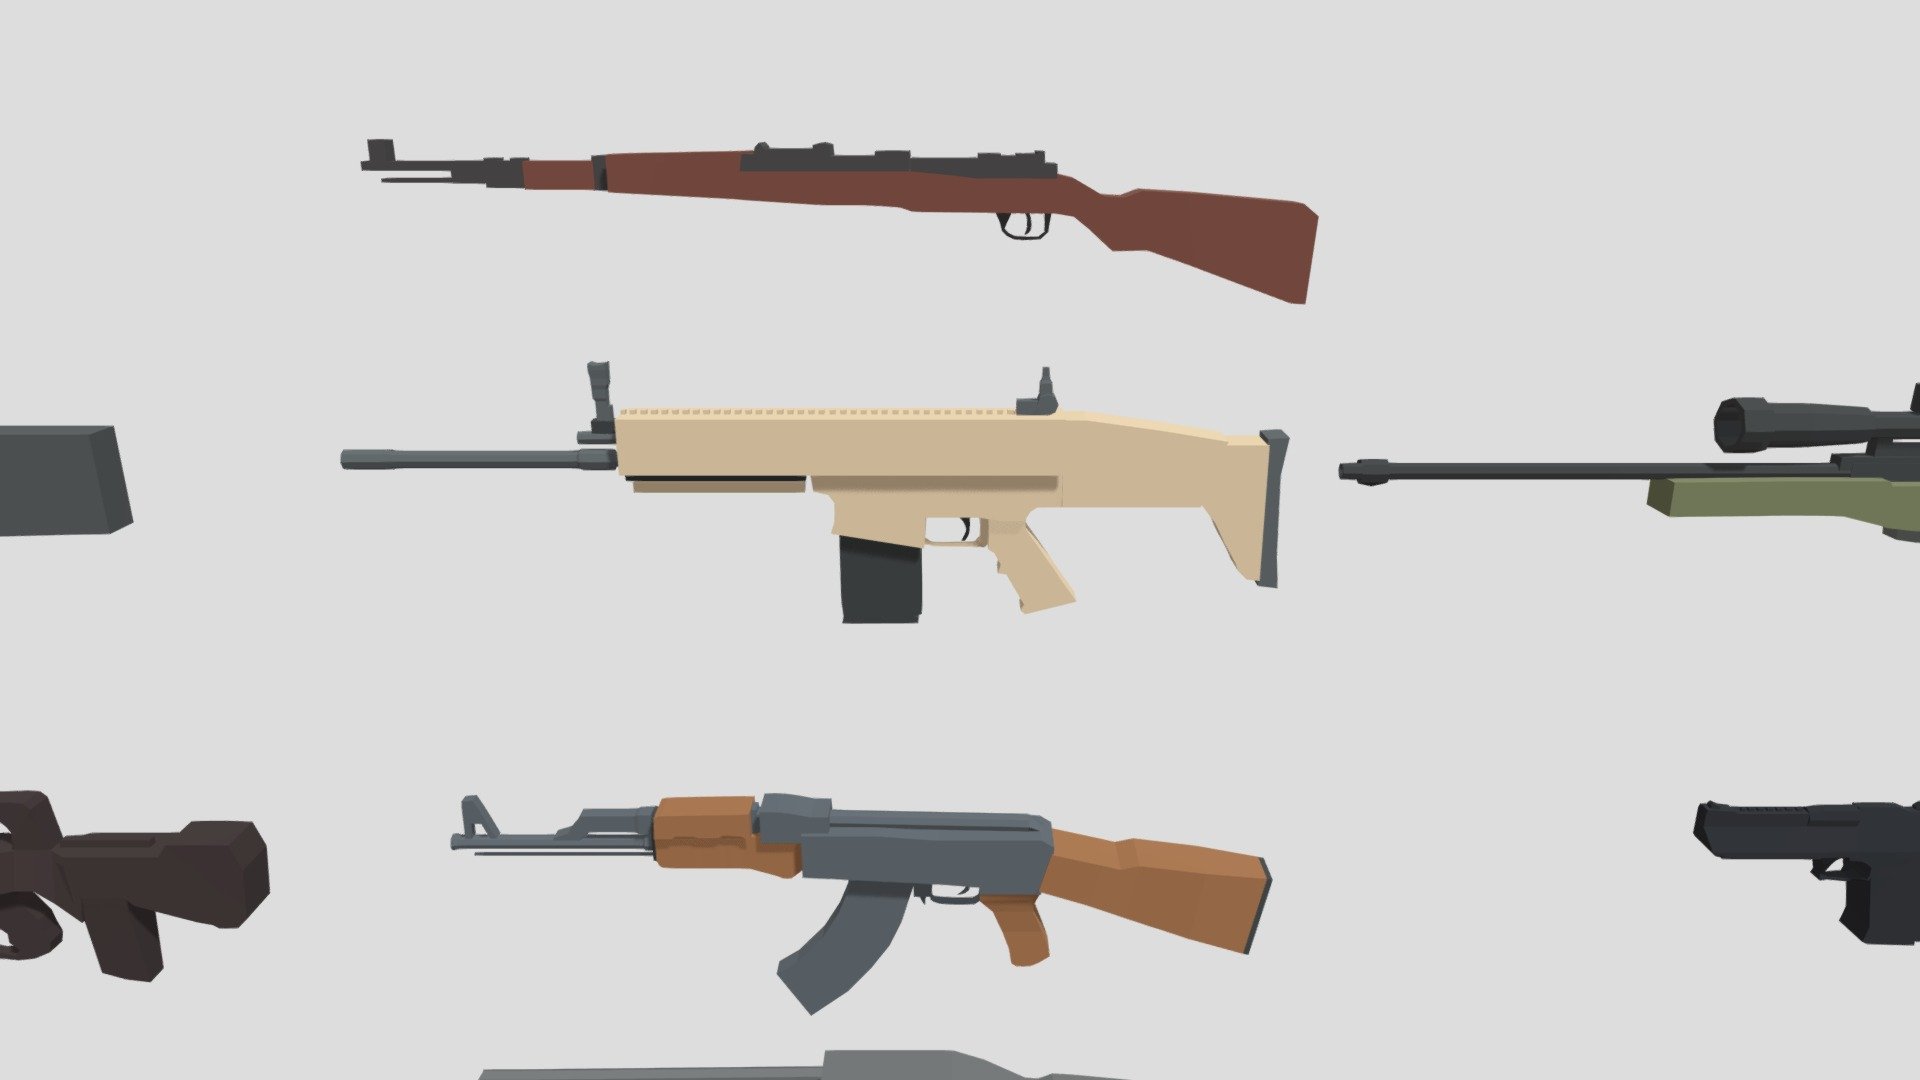 Some low poly guns I made featuring :




AK-47.

Desert Eagle

Scar-L

Shotgun

Kar98K
 - Low poly guns - 3D model by pnoiroux 3d model